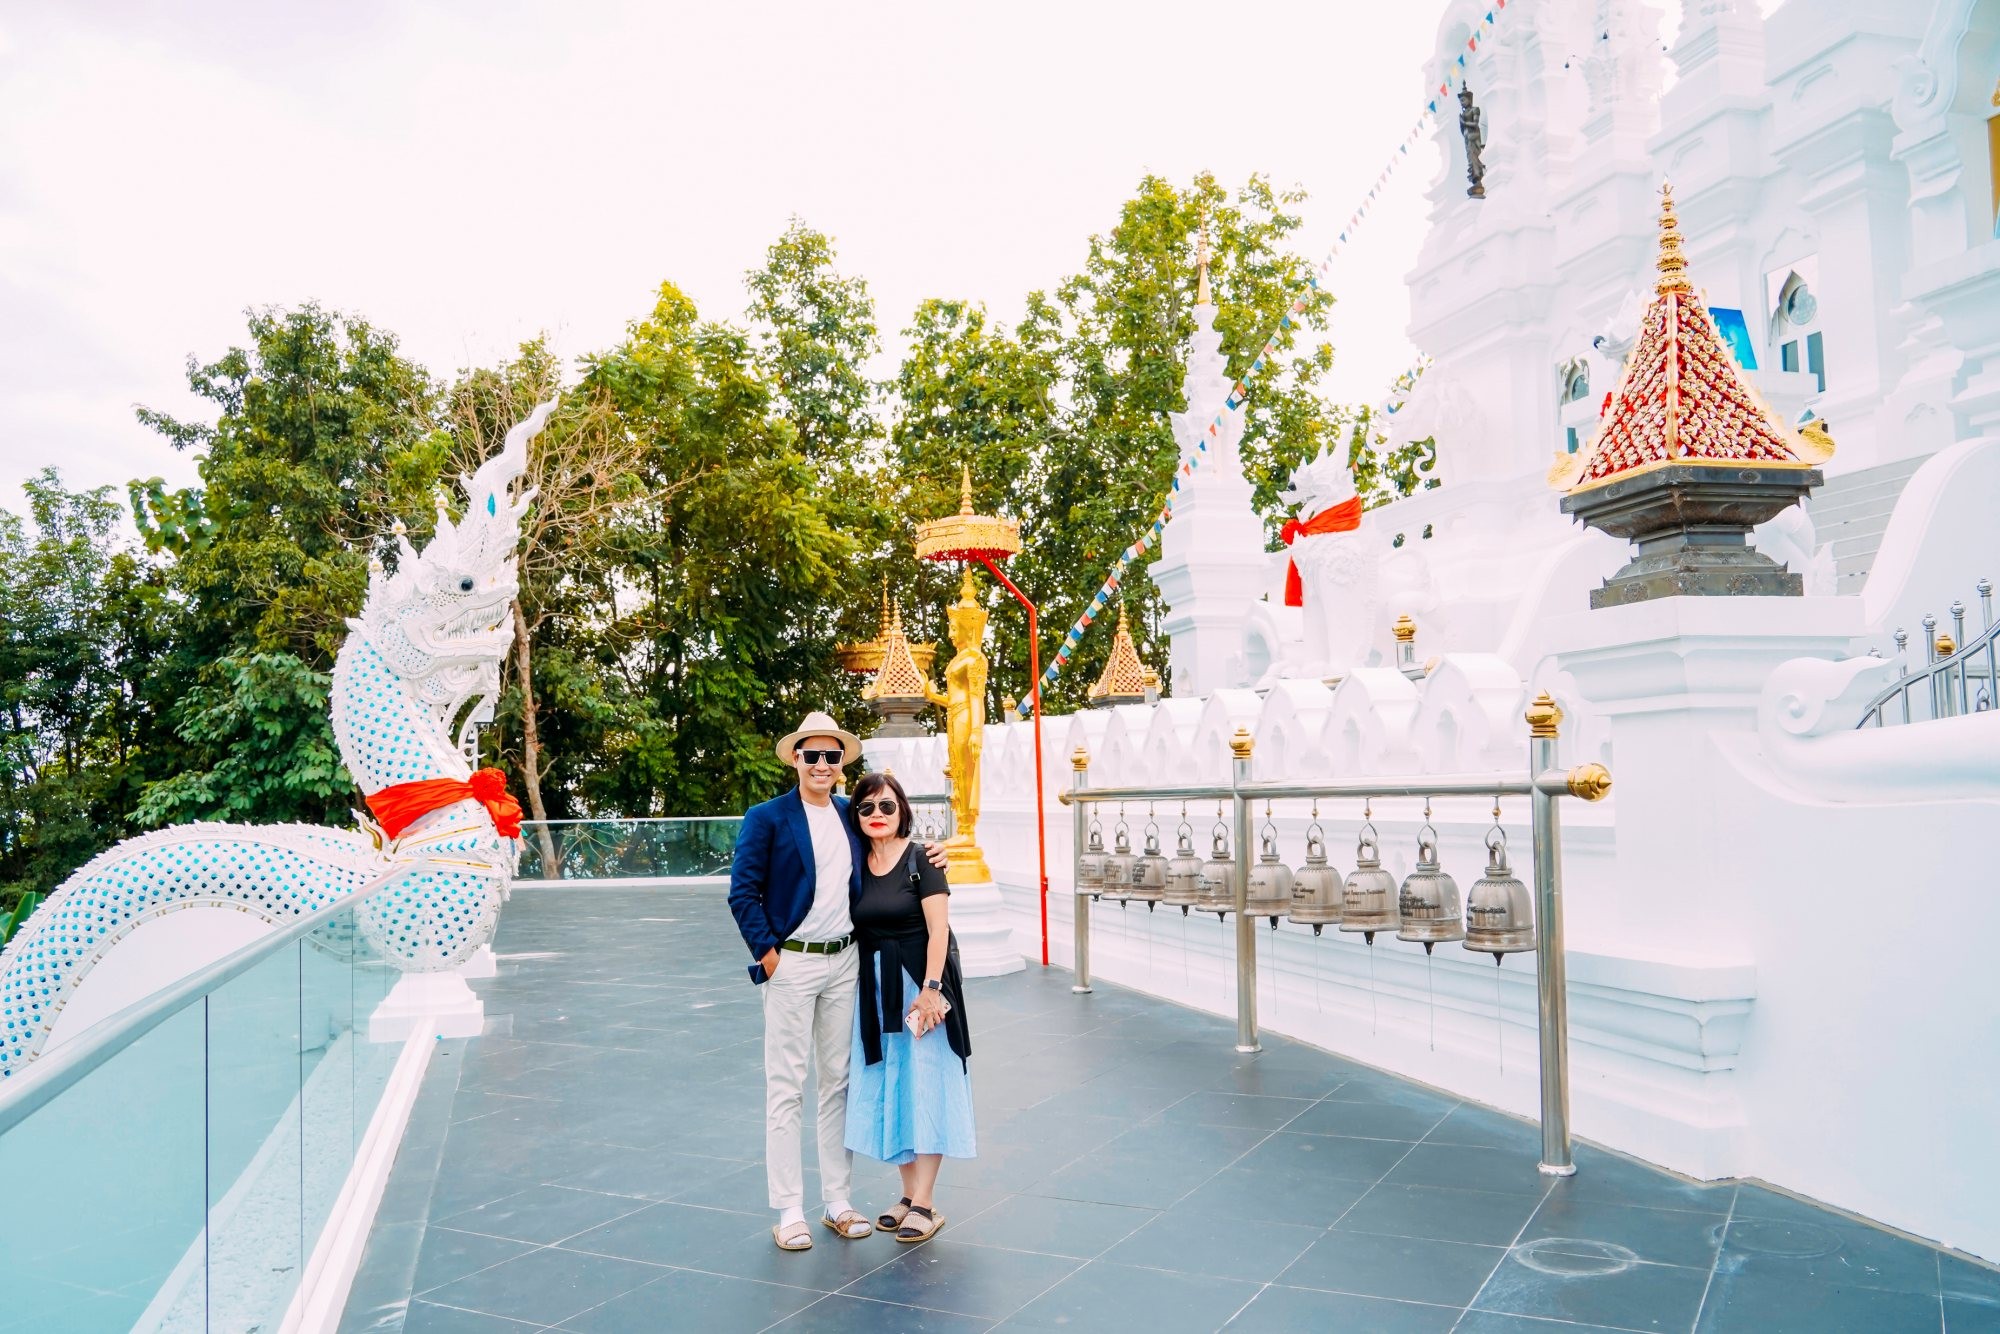 Nguyên Khang cùng mẹ tham dự lễ hội thả đèn trời lớn nhất thế giới